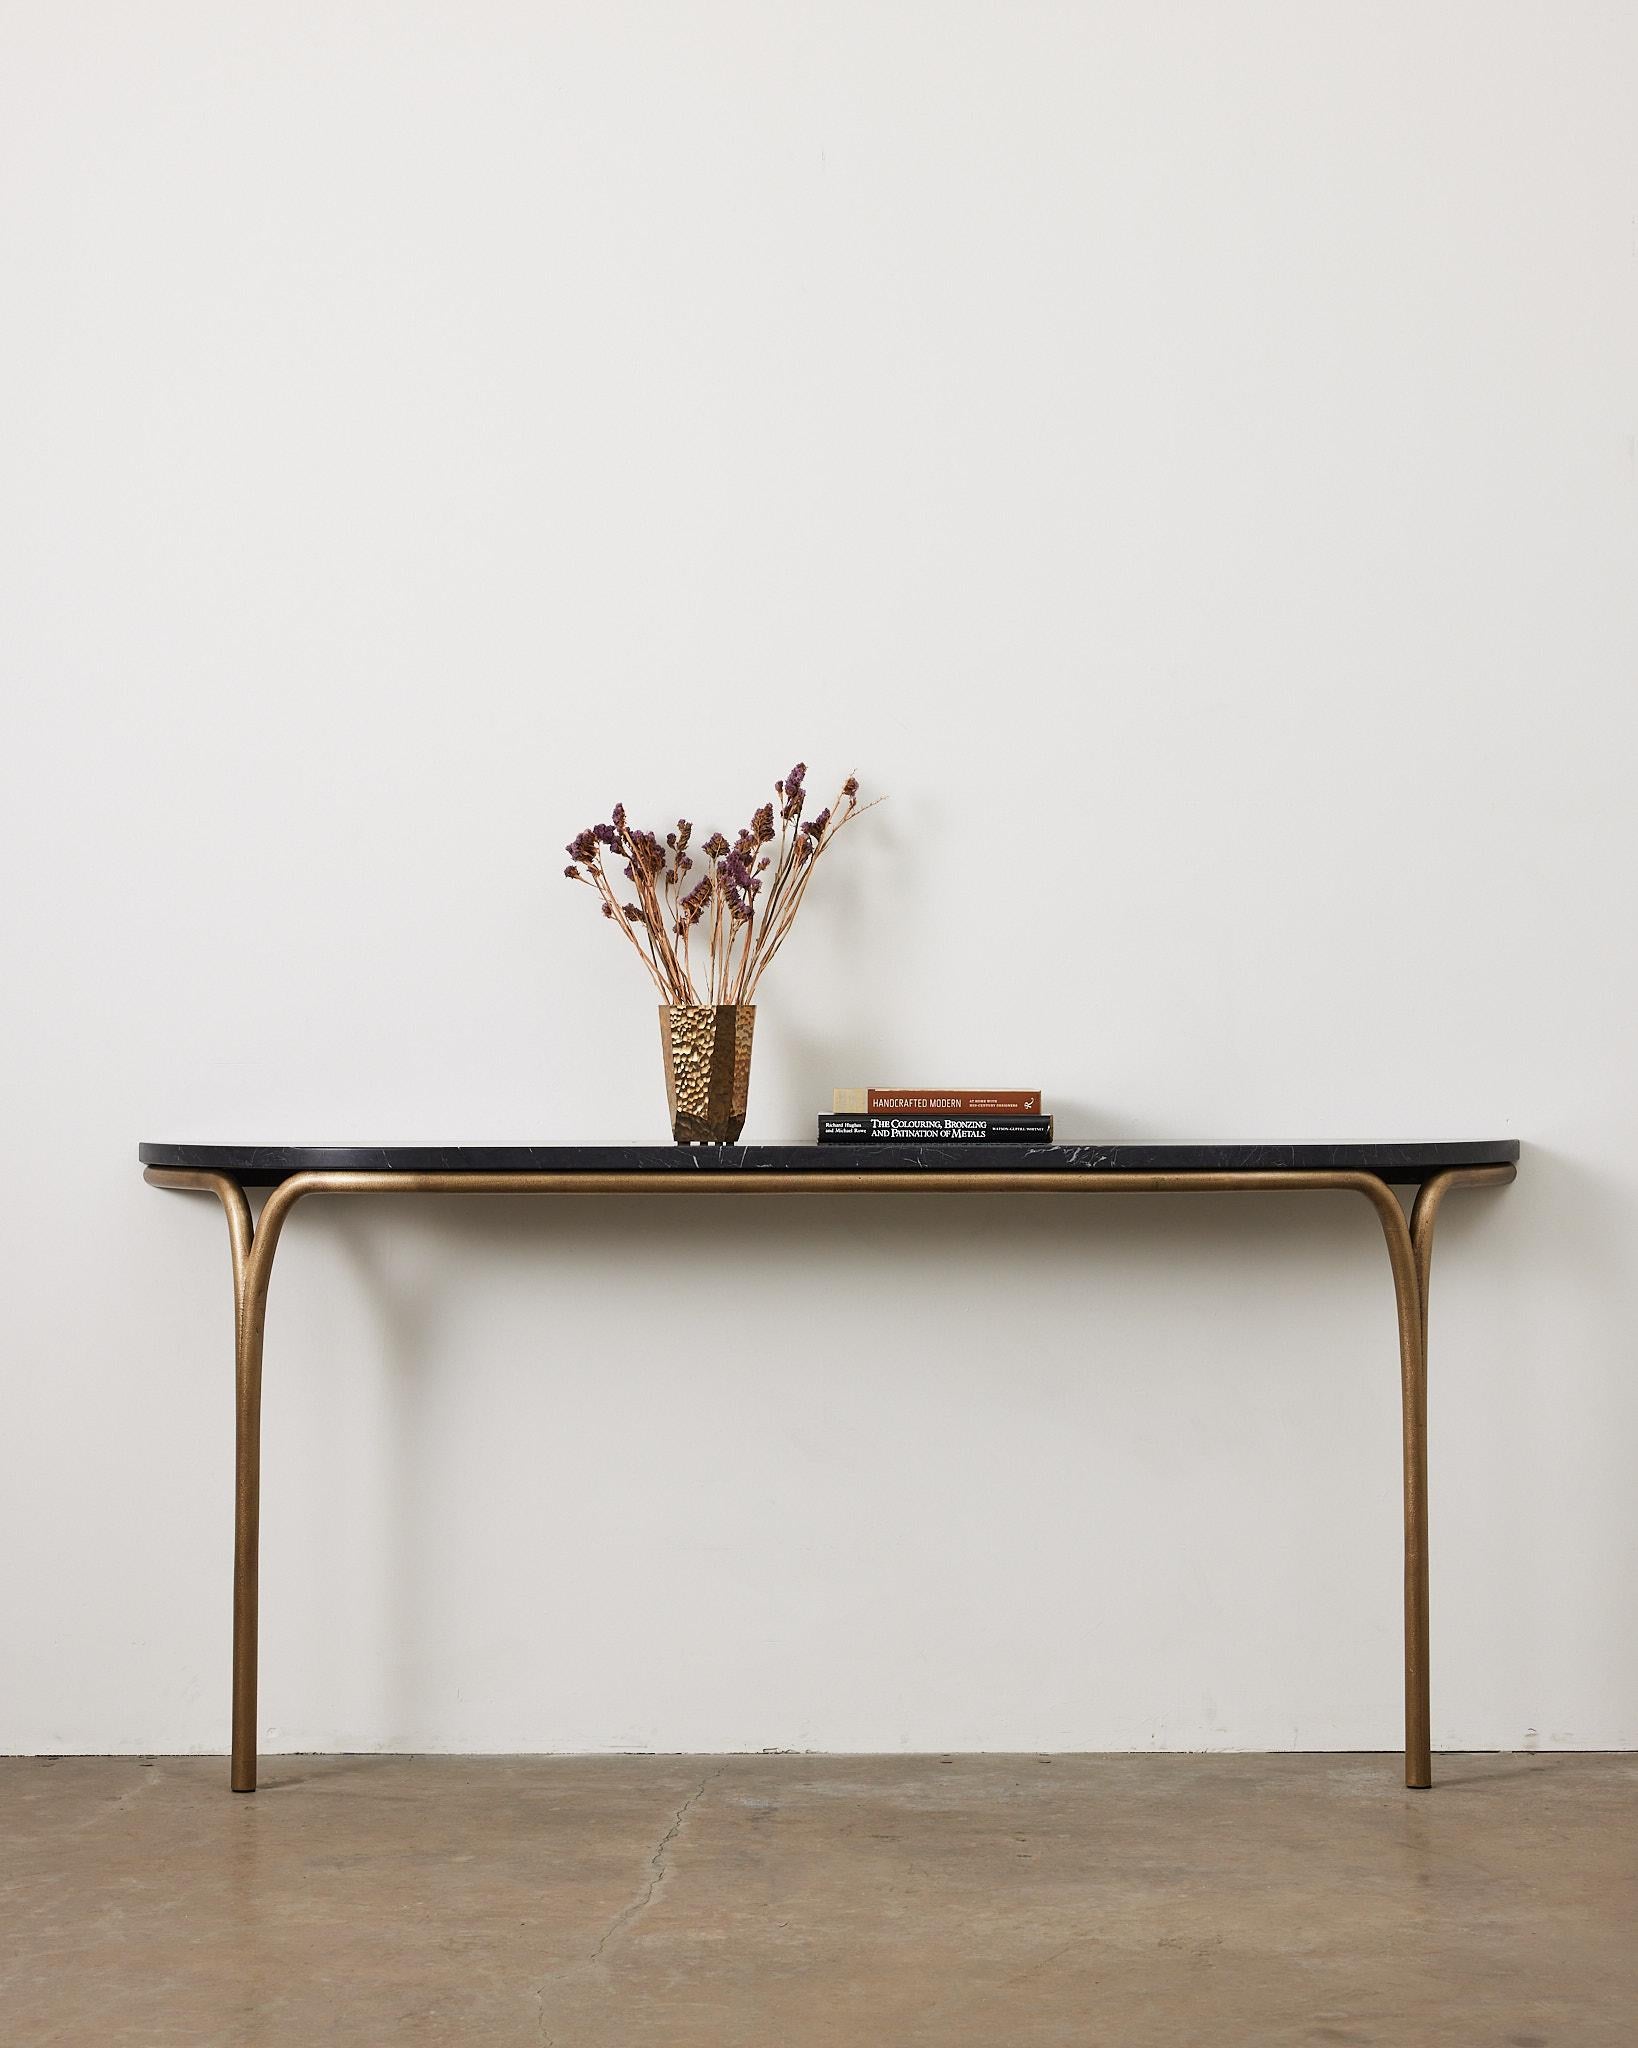 La table console Cirrus juxtapose la solidité structurelle à la légèreté de la forme. La forme gracieuse des pieds crée une ouverture lorsqu'elle rencontre la masse du plateau, l'espace négatif mettant en valeur les qualités distinctes de chaque